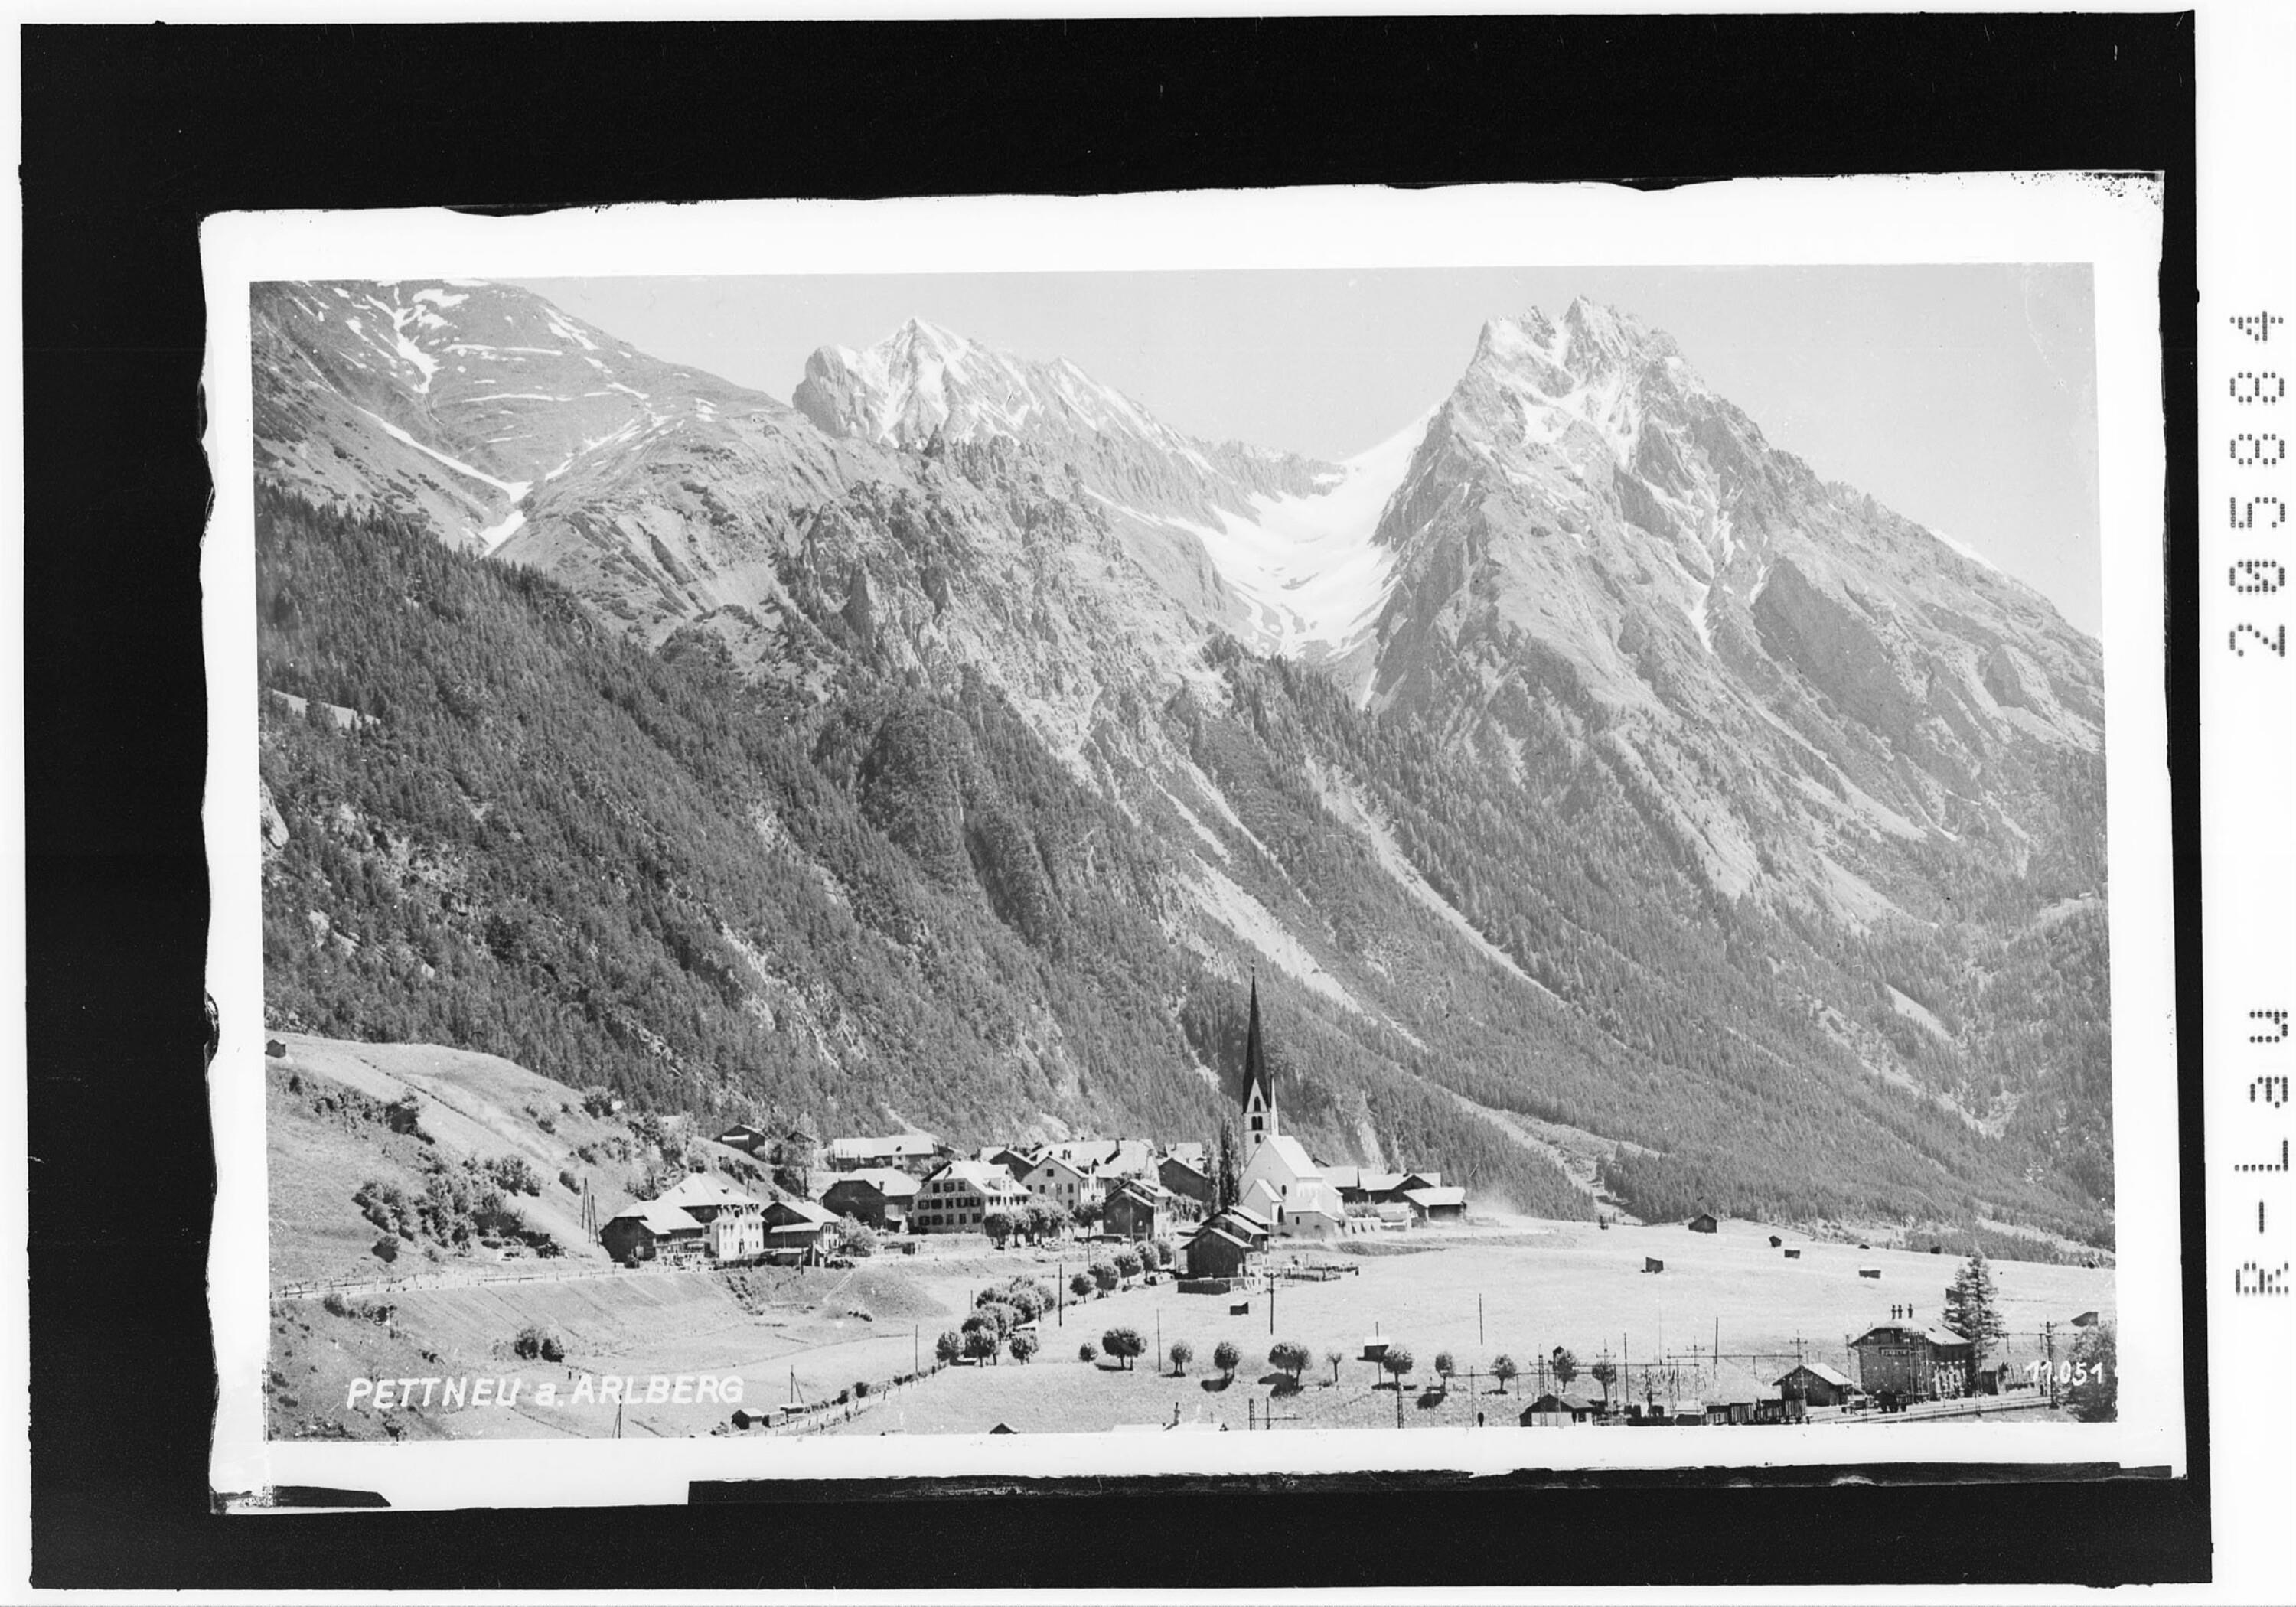 Pettneu am Arlberg></div>


    <hr>
    <div class=